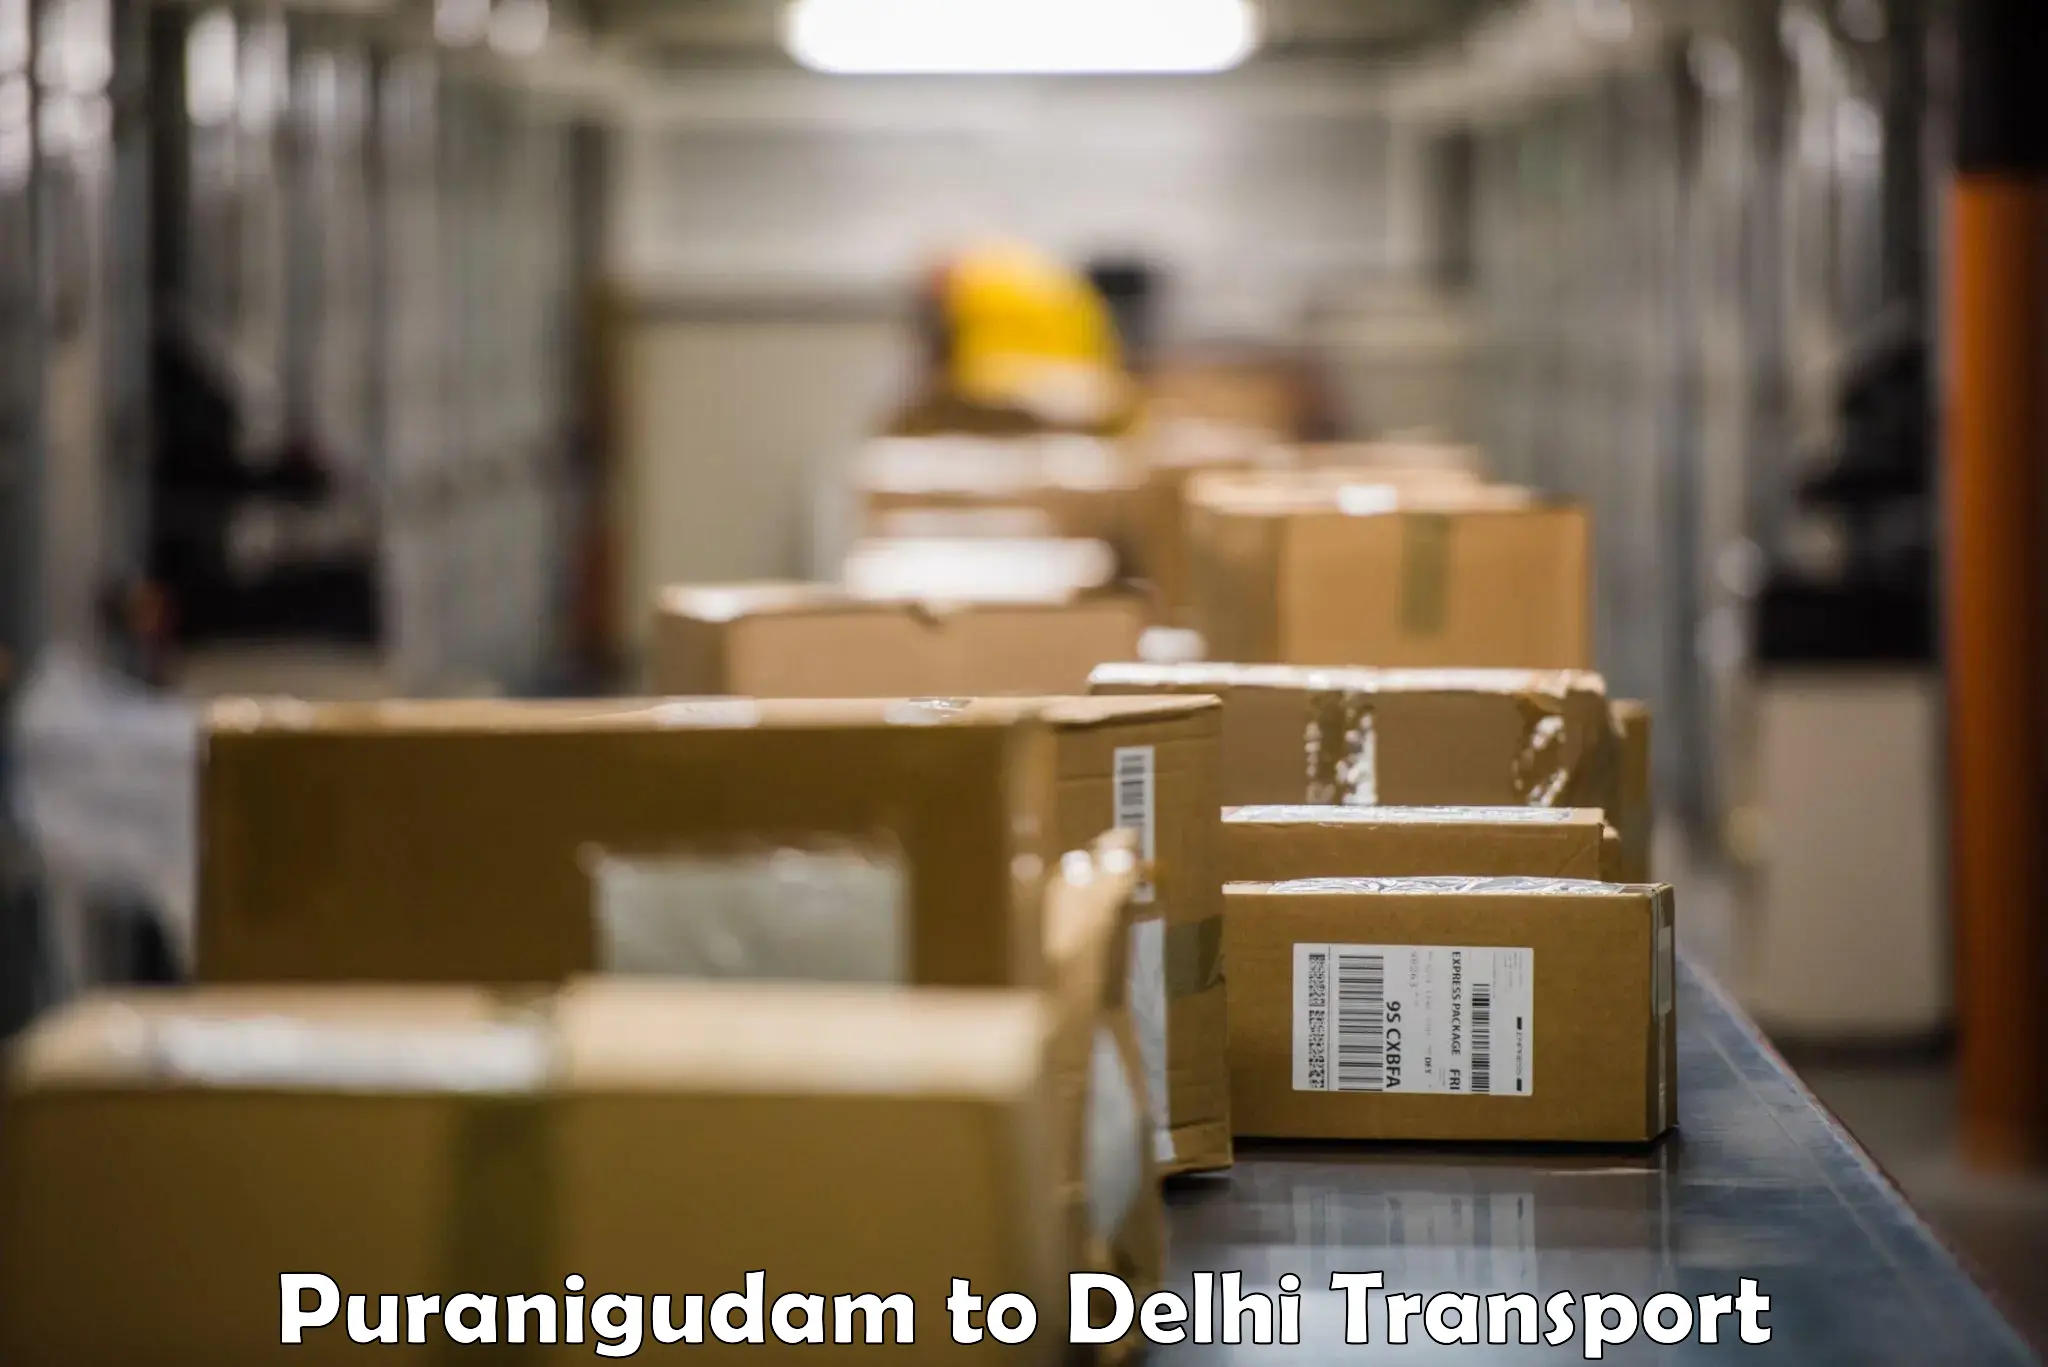 Truck transport companies in India Puranigudam to Sansad Marg